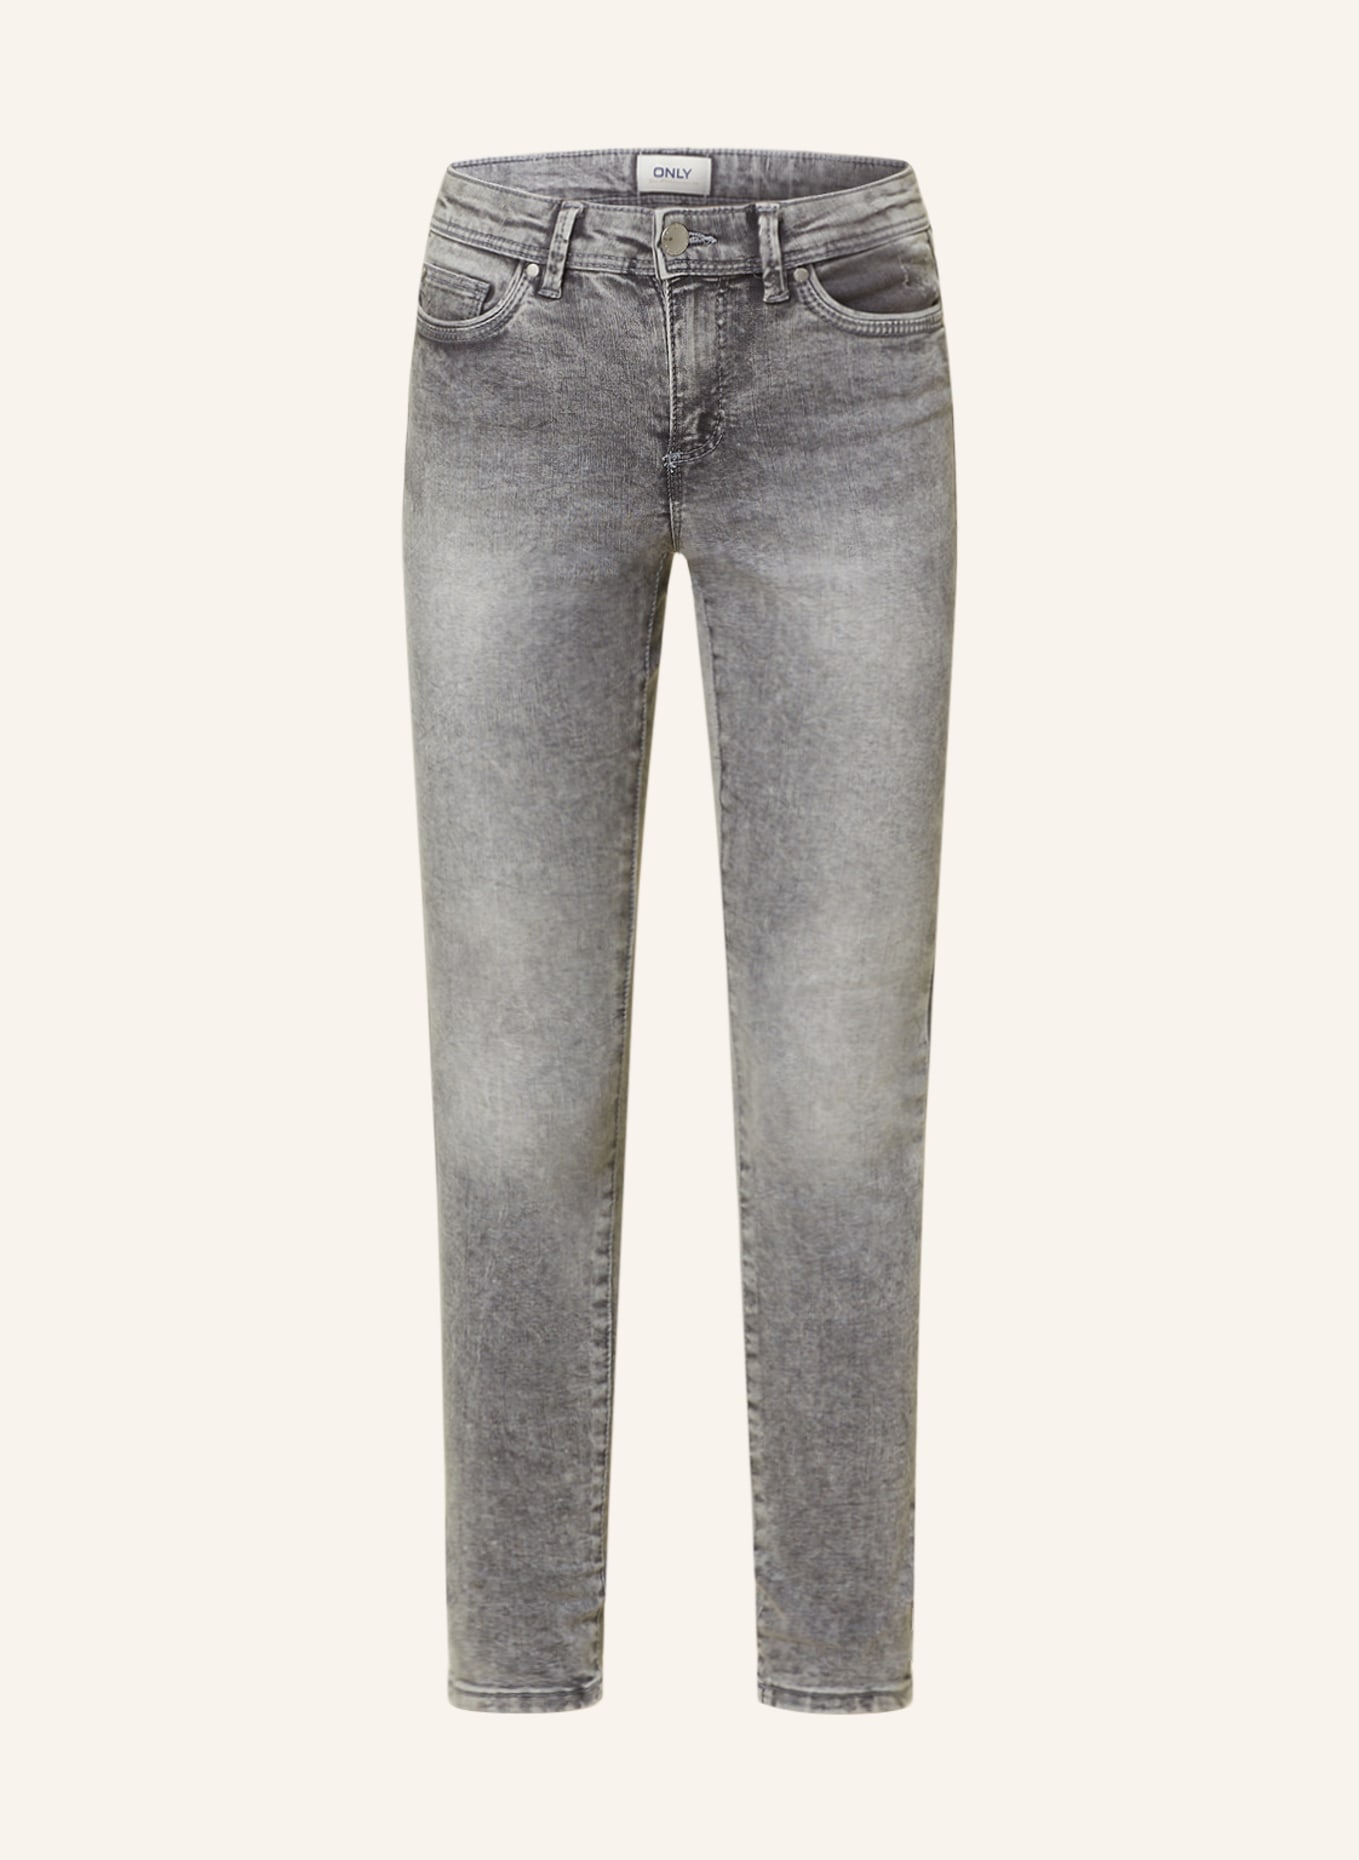 ONLY Skinny jeans, Color: MEDIUM GREY DENIM (Image 1)